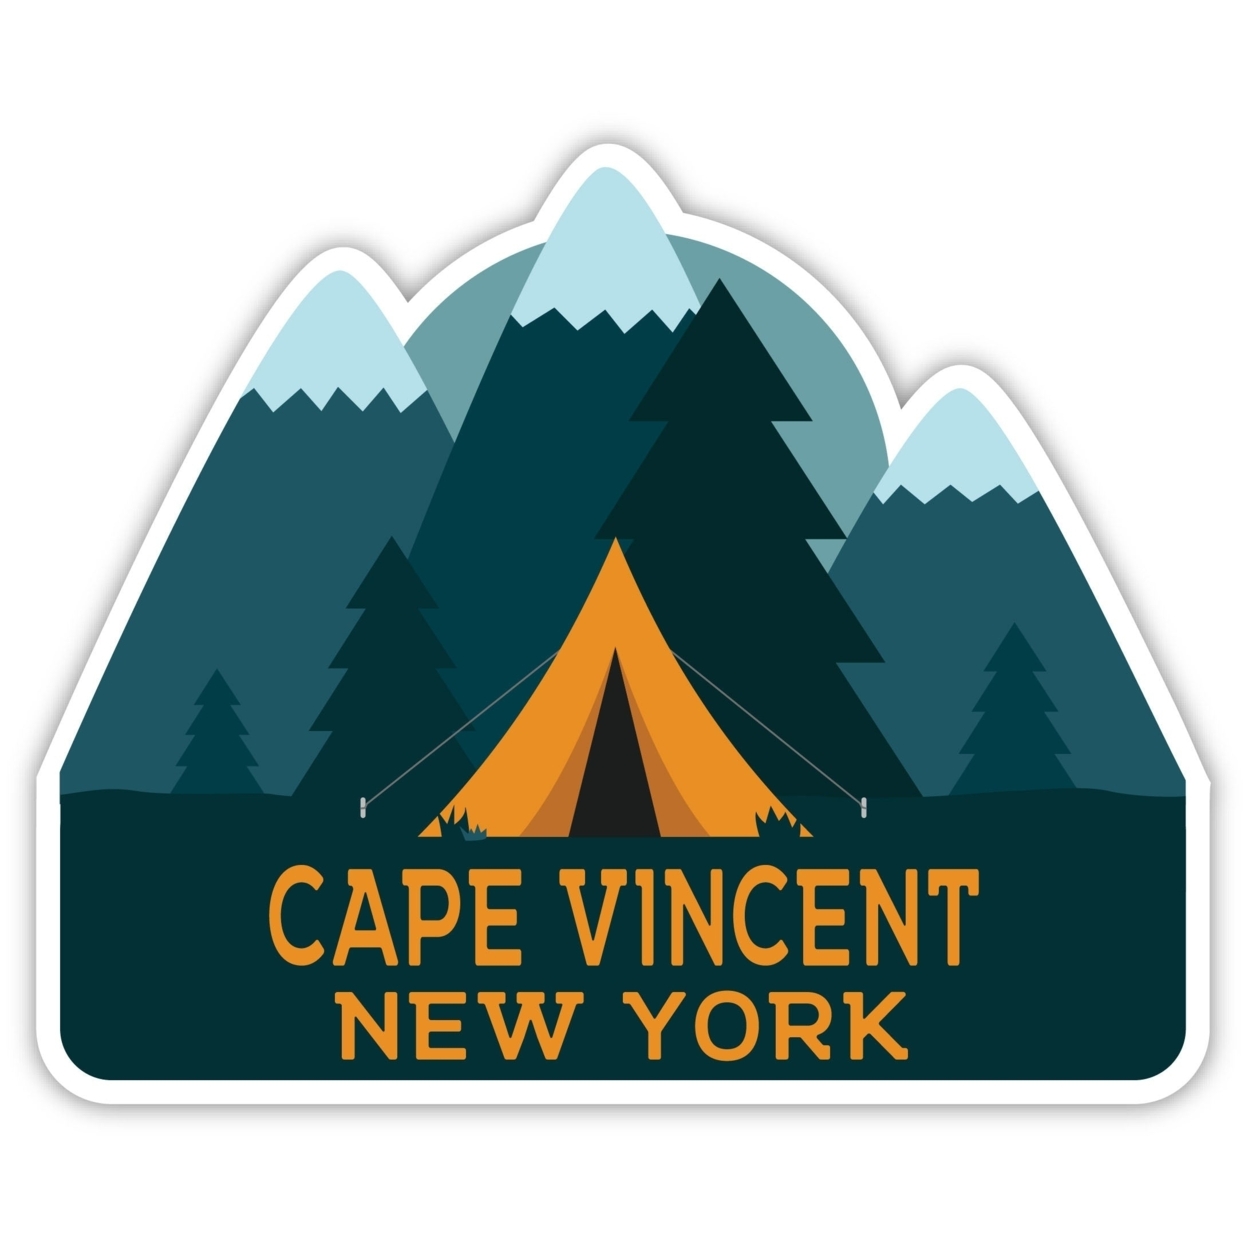 Cape Vincent New York Souvenir Decorative Stickers (Choose Theme And Size) - Single Unit, 8-Inch, Tent